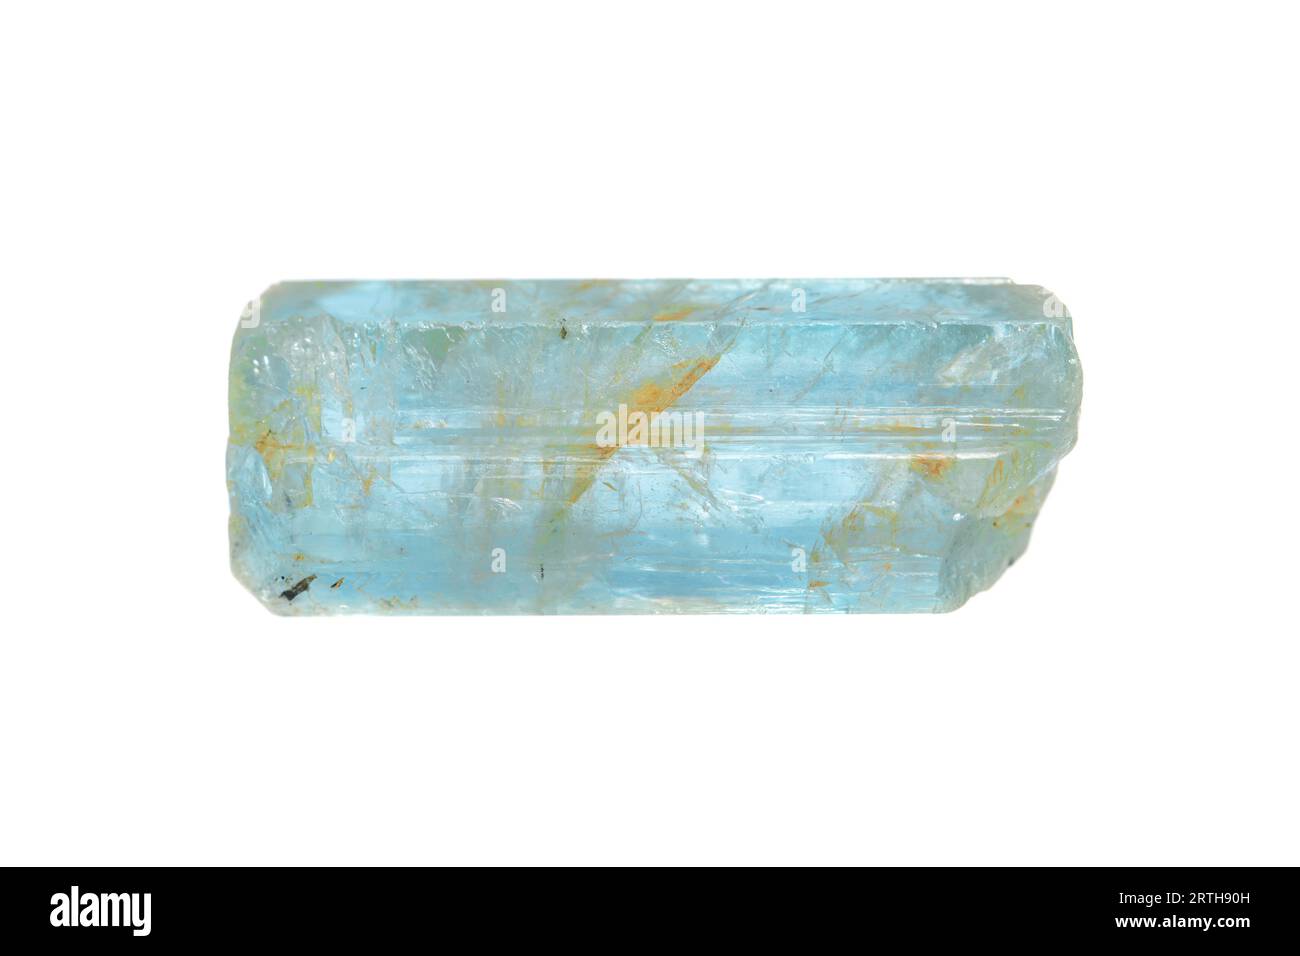 Cristal de pierre précieuse naturel aquamarine rugueuse (groupe béryl) sur fond blanc Banque D'Images